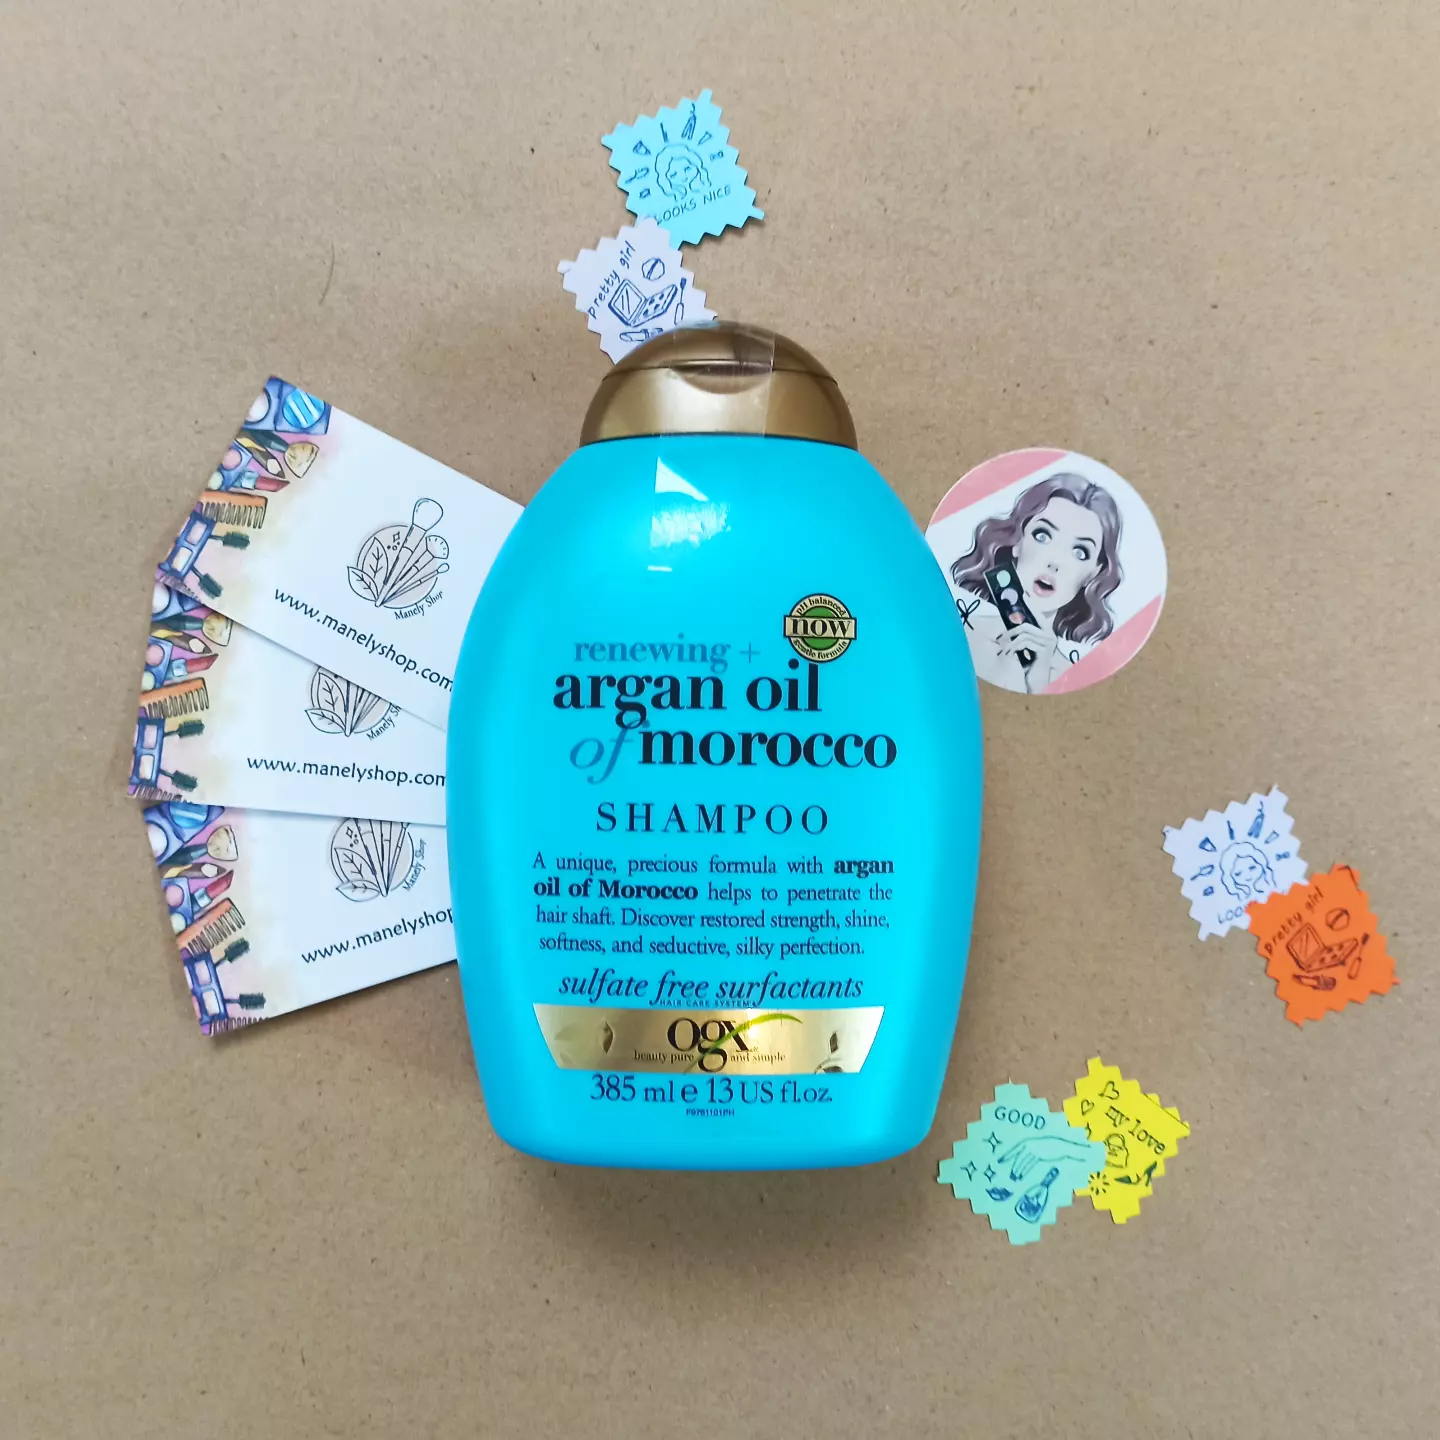 شامپو روغن آرگان مراکش او جی ایکس Ogx اصل بدون سولفات ( نرم کننده و آبرسان و ترمیم کننده ) Ogx Renewing Argan Oil Of Morocco Shampoo